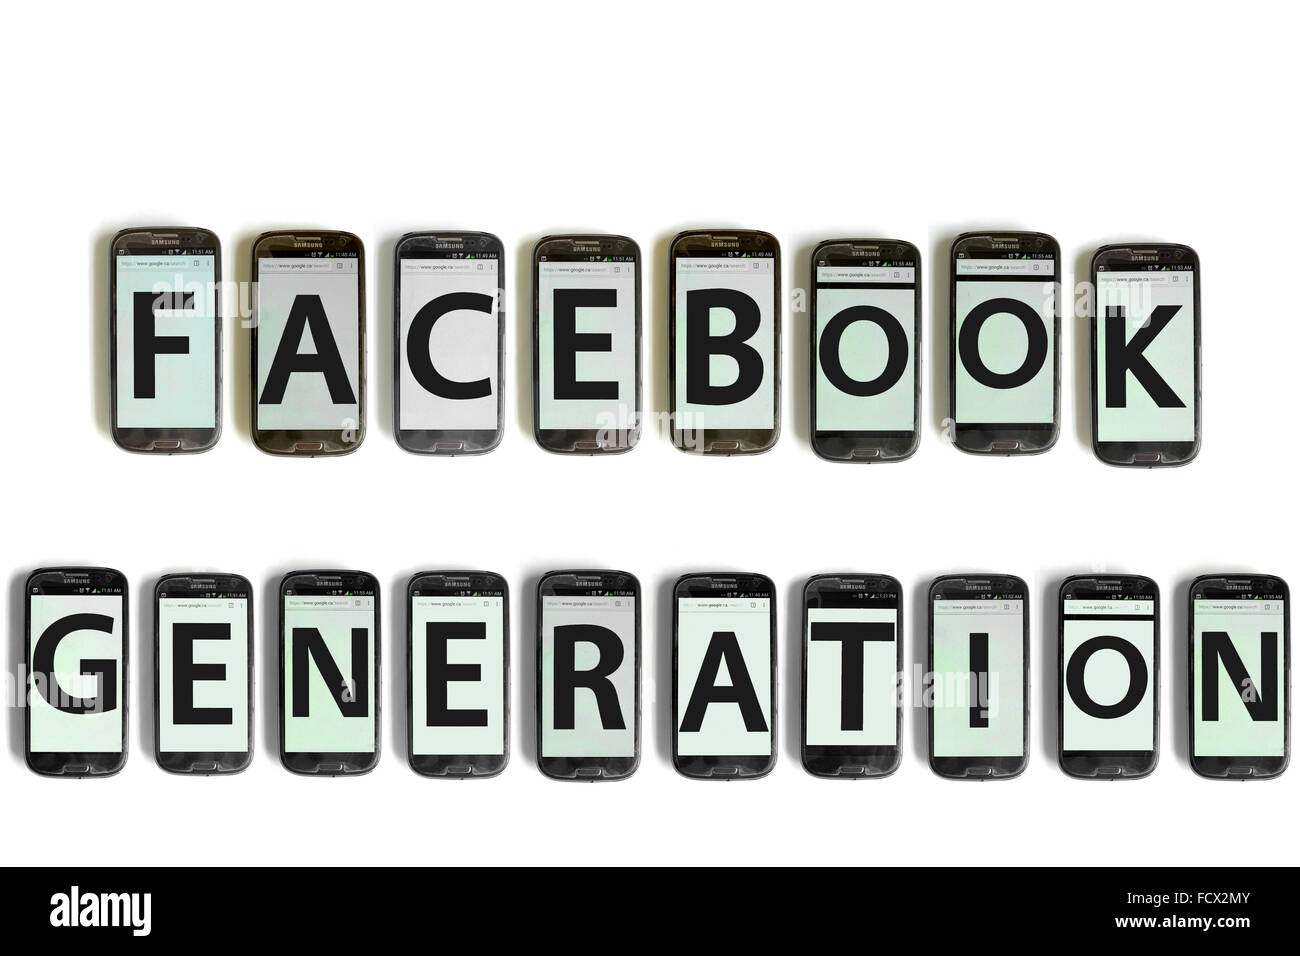 Facebook-Generation geschrieben auf dem Bildschirm des Smartphones vor weißem Hintergrund fotografiert. Stockfoto